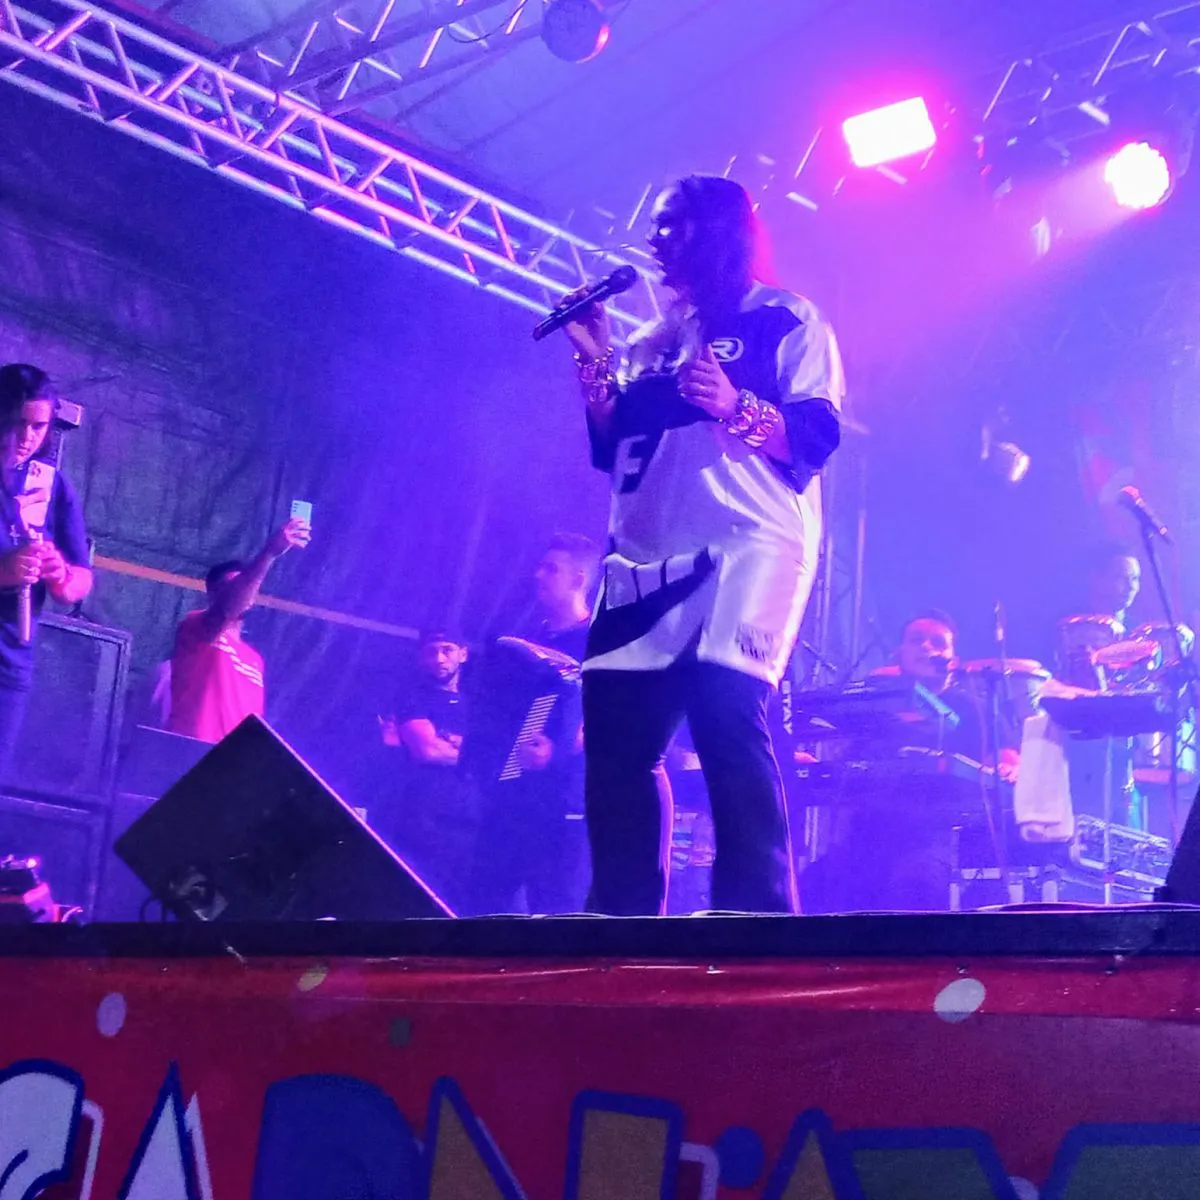 A cantora Samyra Show de Fortaleza no Ceará, fez a abertura do Carnaval na cidade de Bequimão – Foto: Divulgação